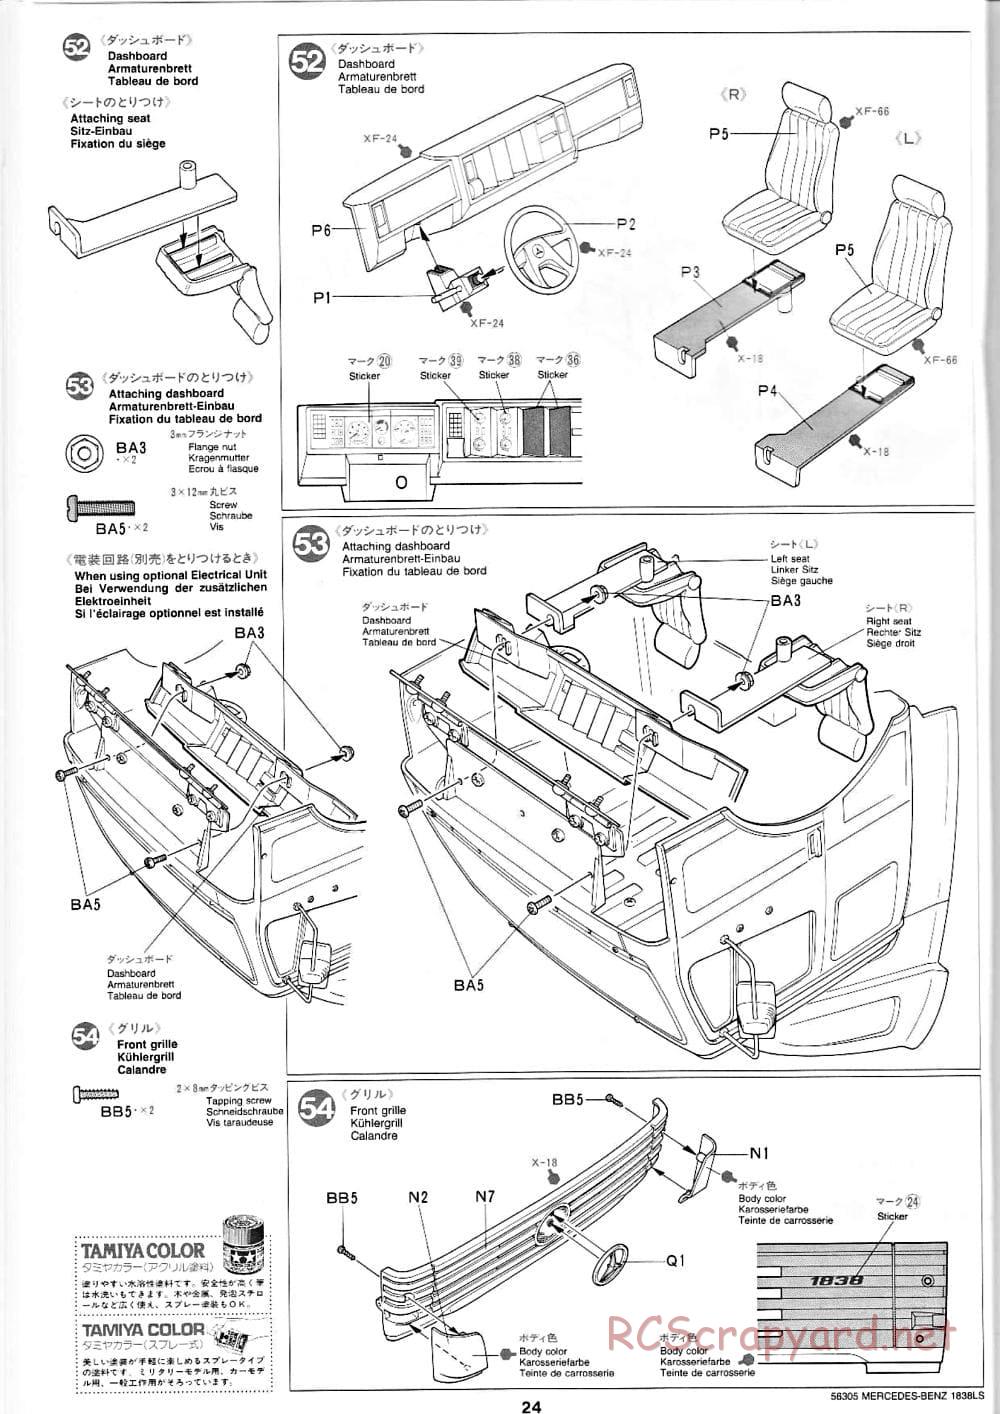 Tamiya - Mercedes-Benz 1838LS - Manual - Page 24